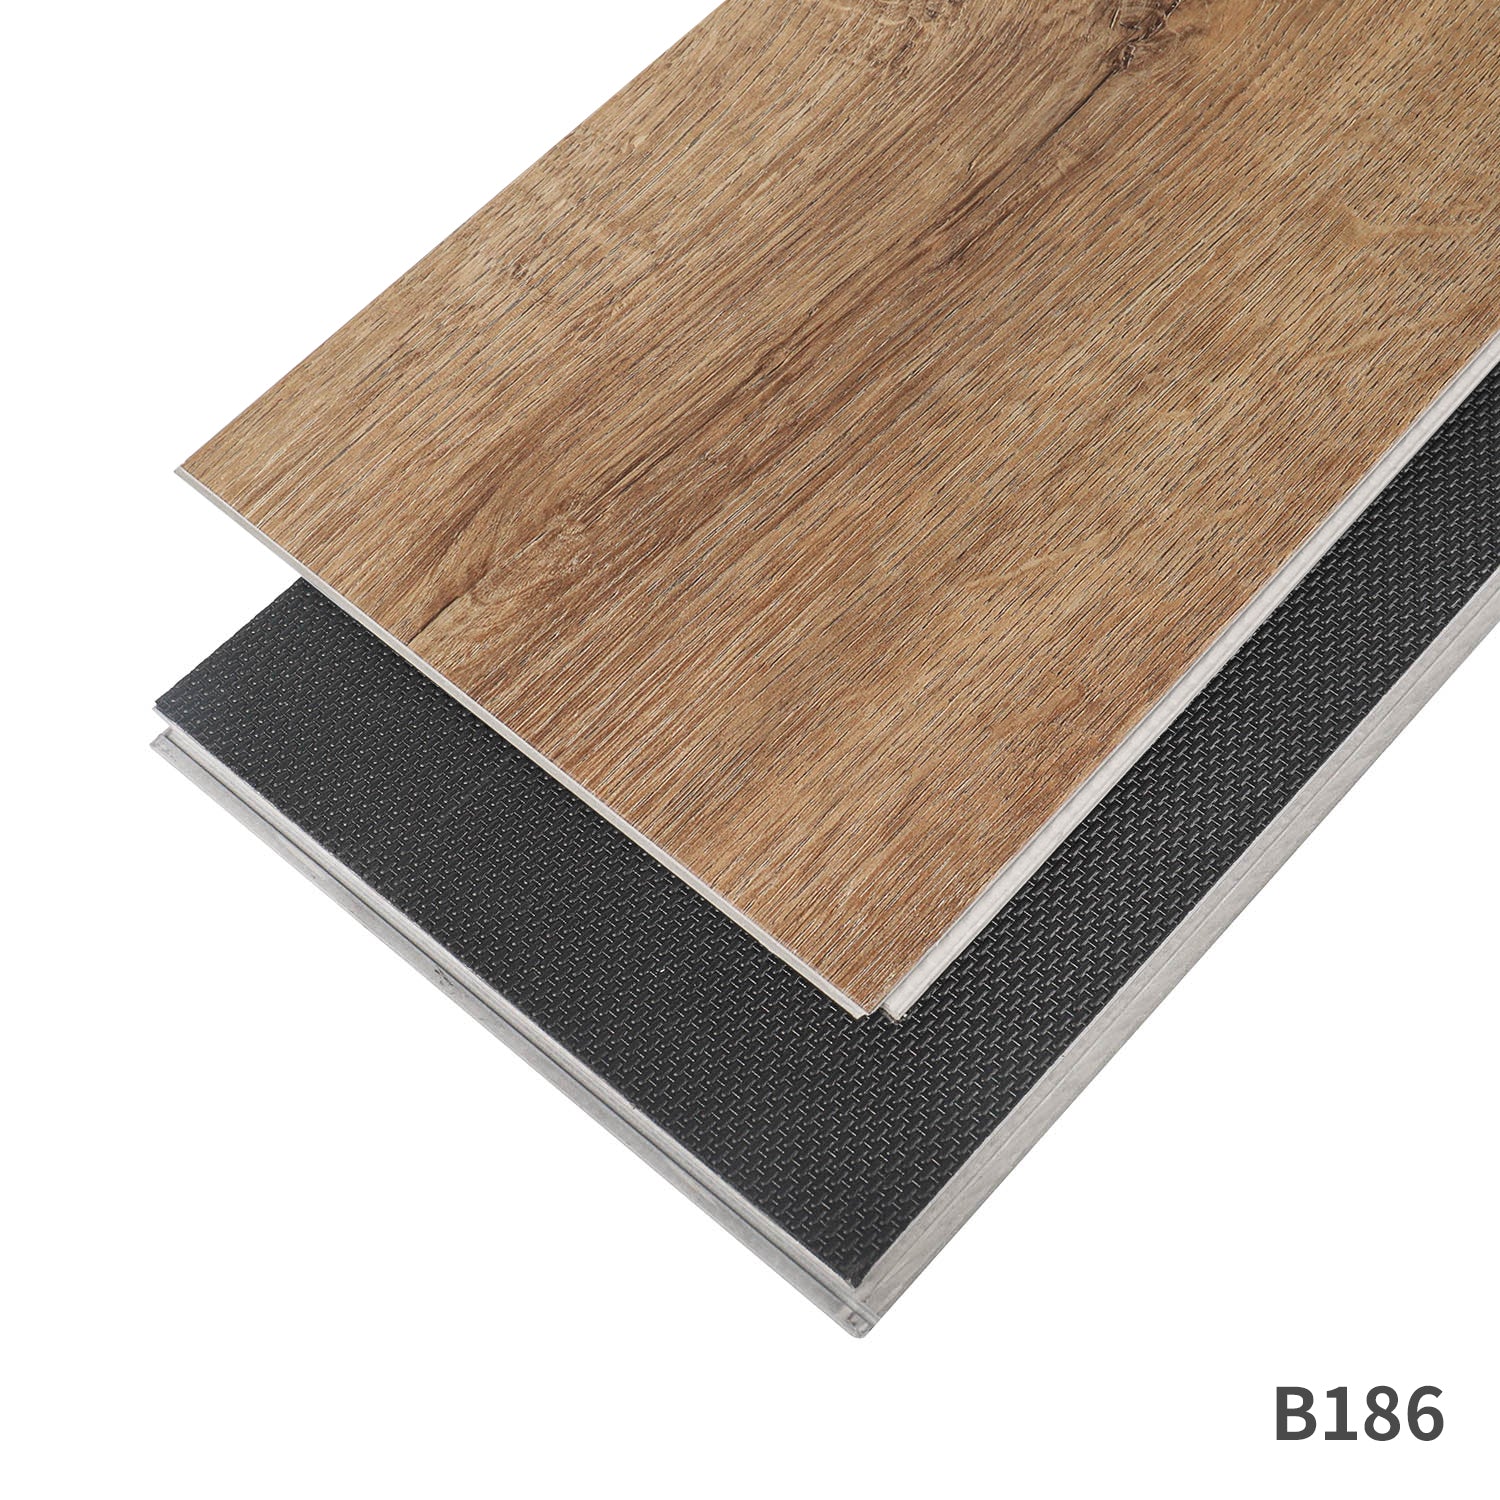 New Design 4mm 5mm 6mm 7mm 8mm Thickness Vinyl Plank Floor Click Lock System SPC Flooring